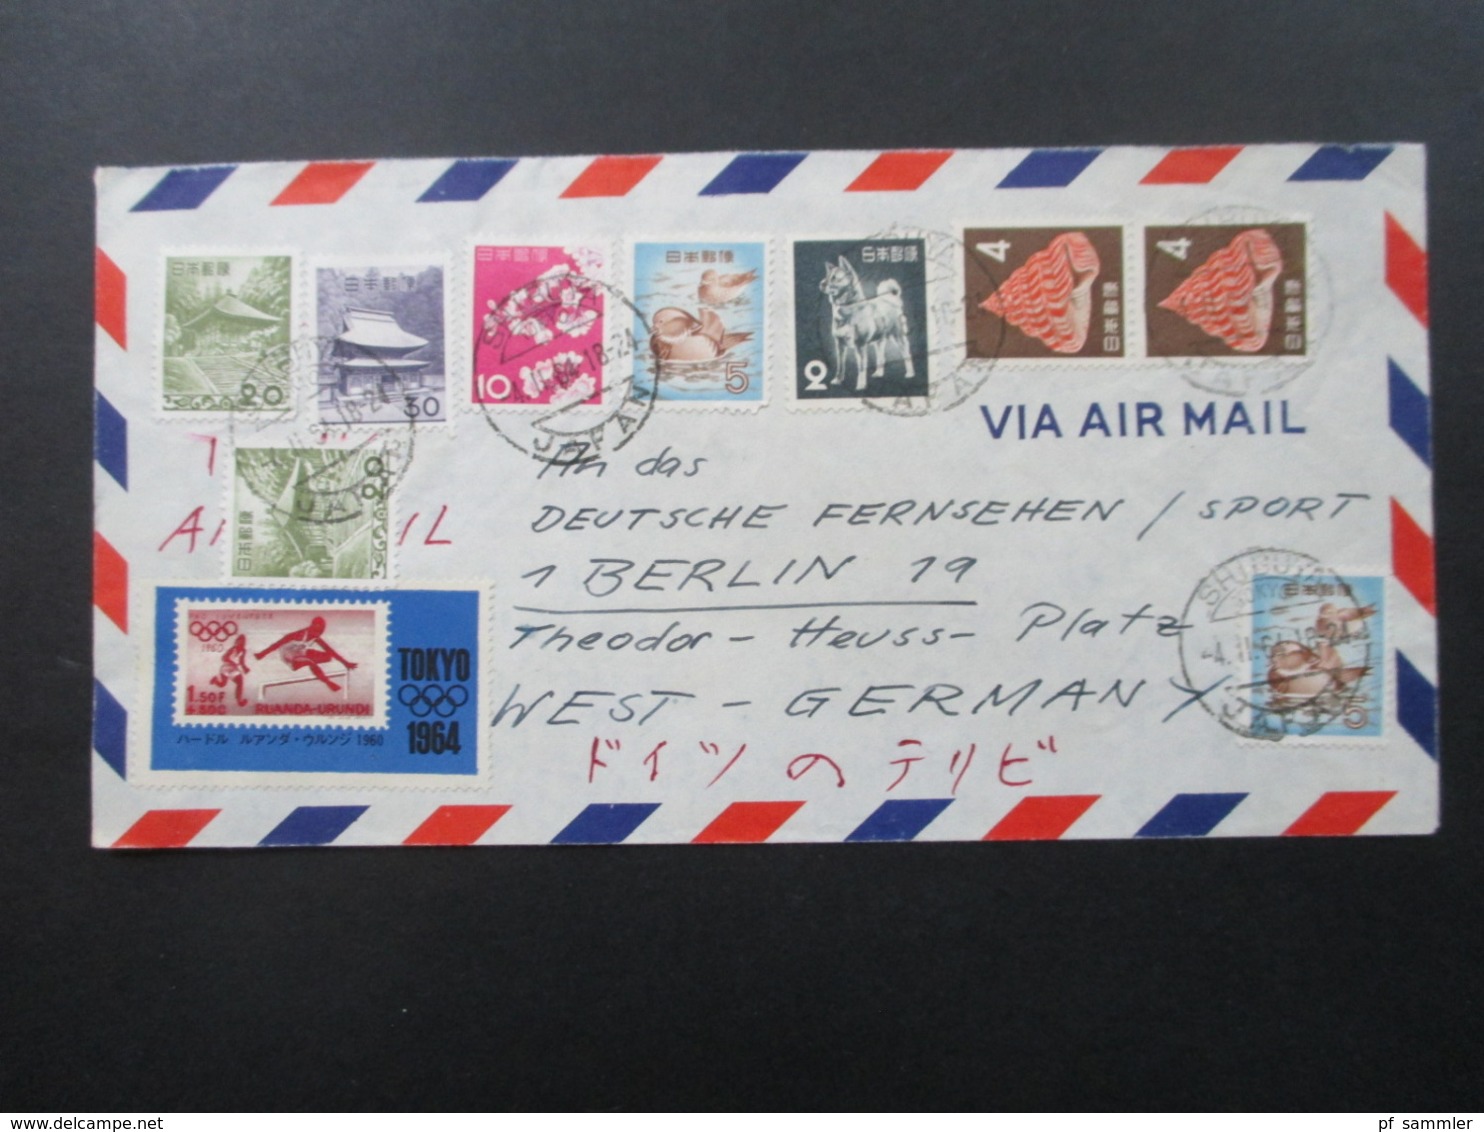 Japan 1964 Luftpostbrief / Via Air Mail Mit 11 Marken Auch Tokyo 1964 An Das Deutsche Fernsehen / Sport In Berlin - Brieven En Documenten